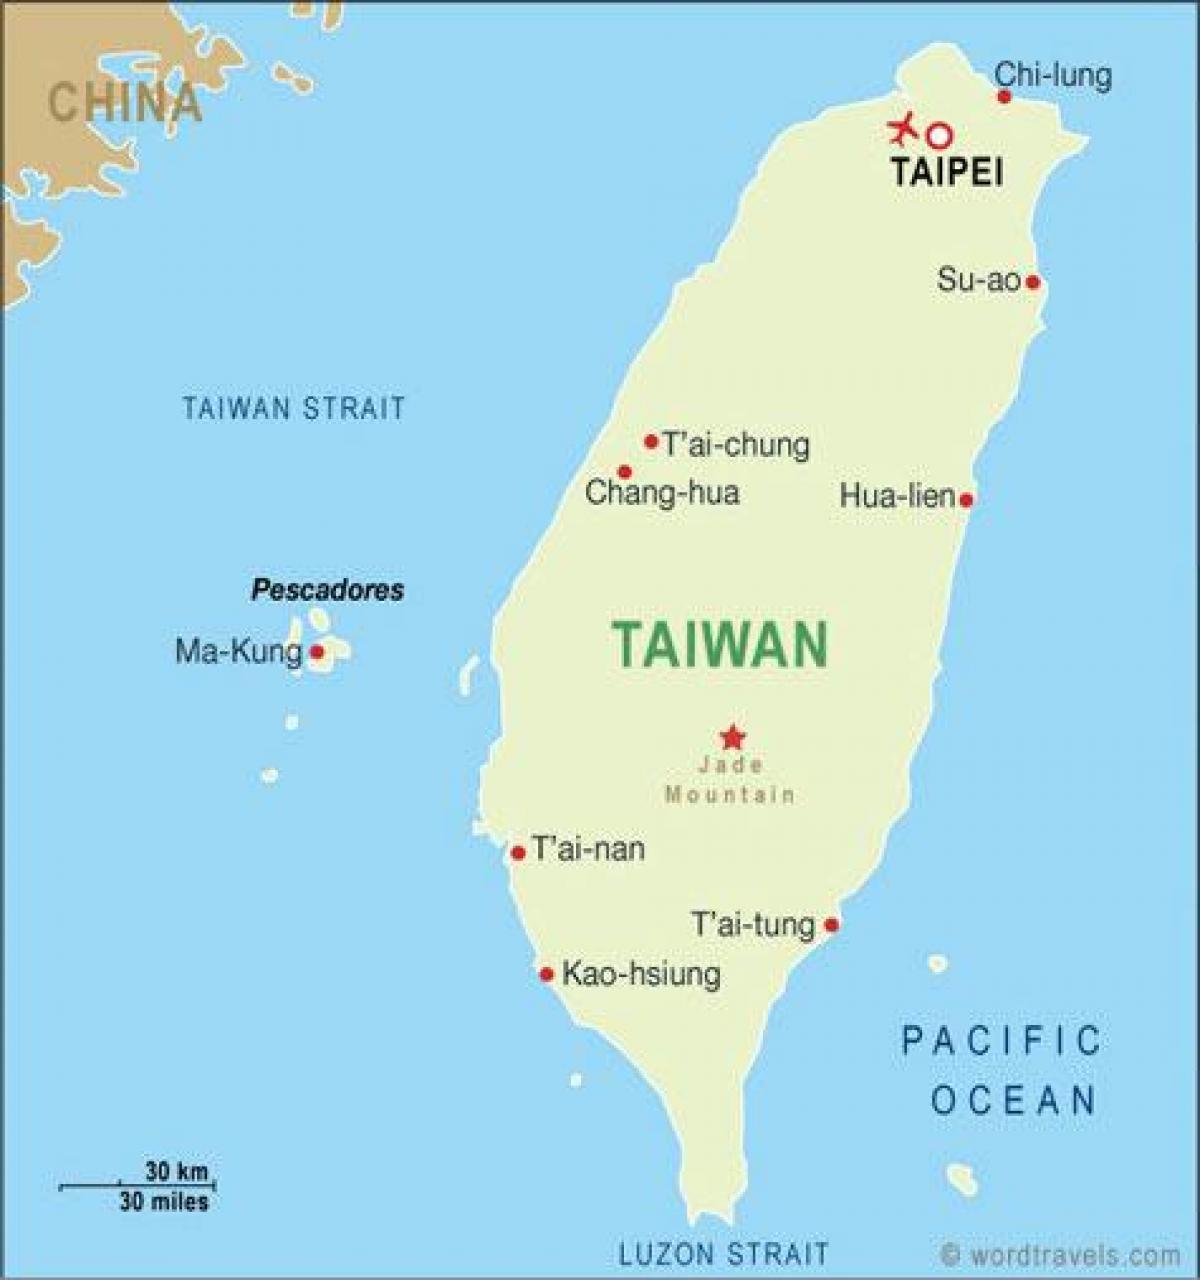 ტაივანის taoyuan საერთაშორისო აეროპორტის რუკა